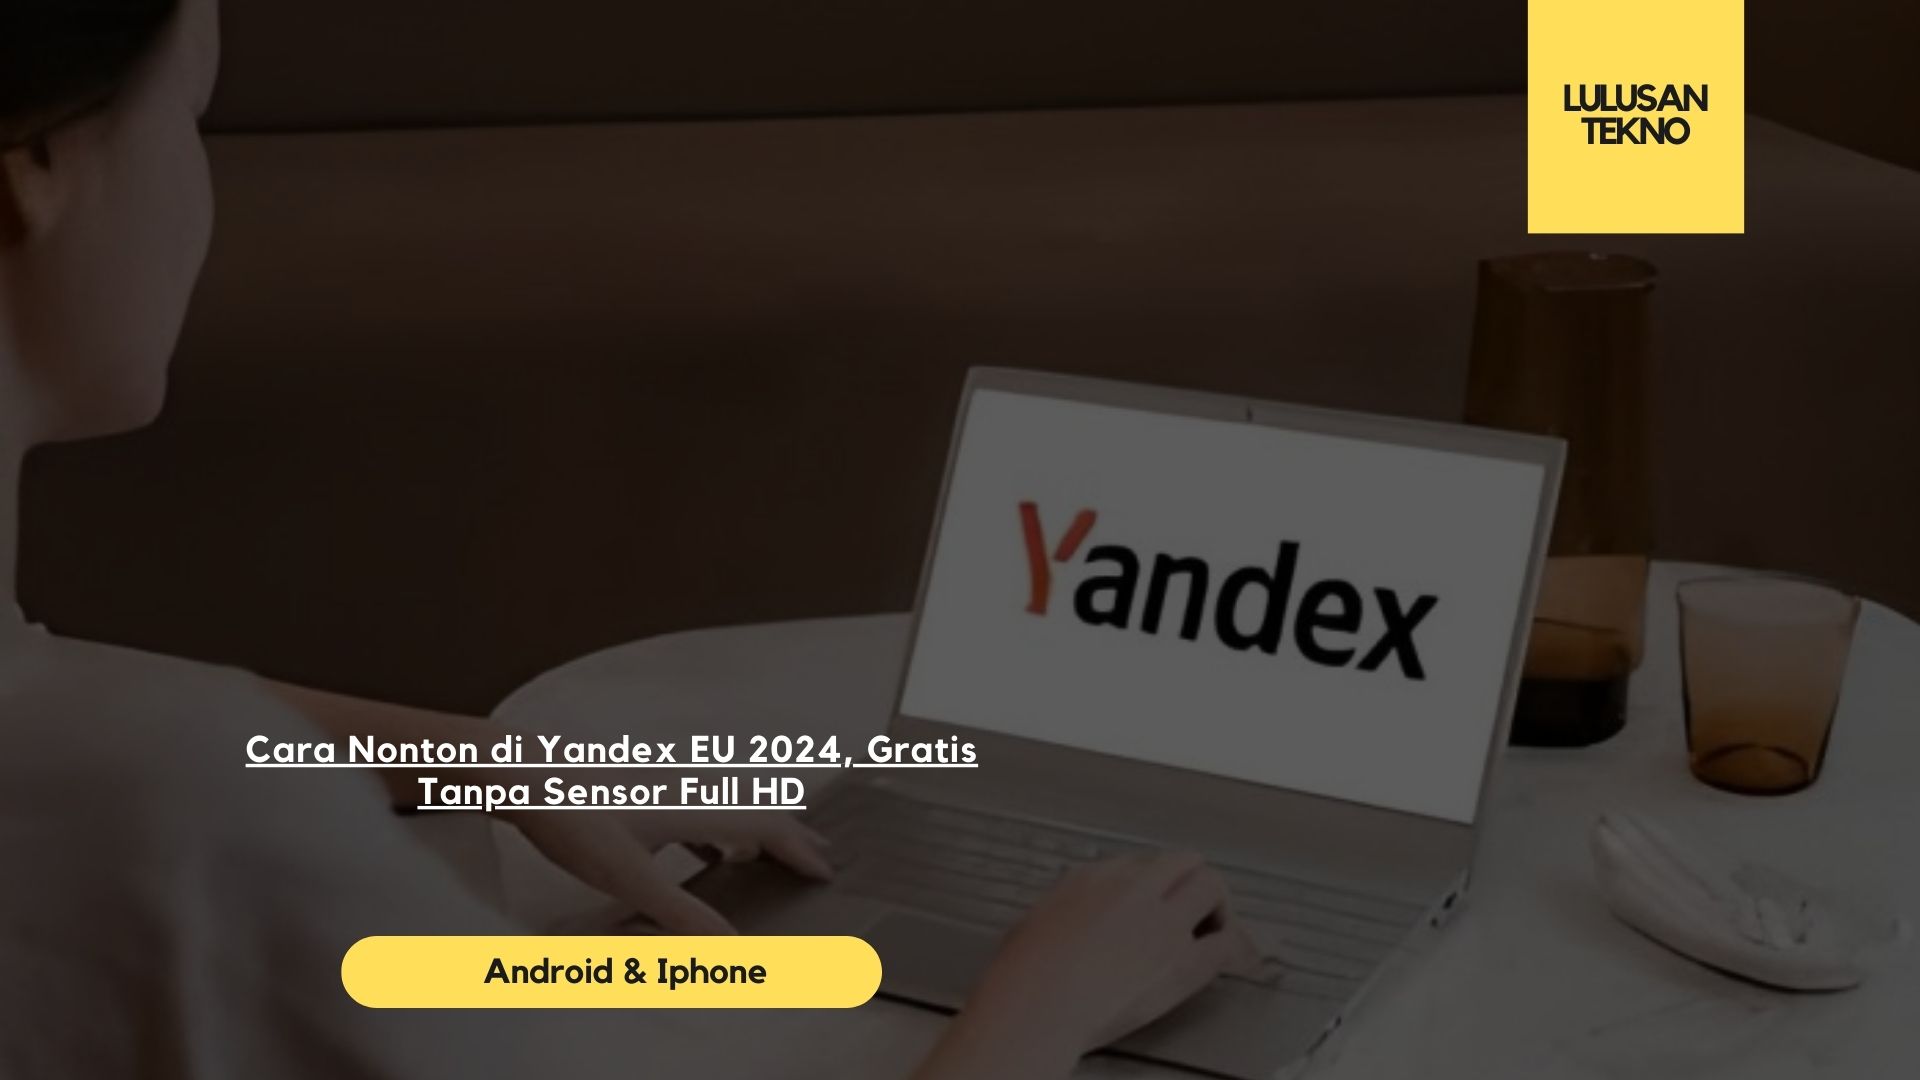 Cara Nonton di Yandex EU 2024, Gratis Tanpa Sensor Full HD